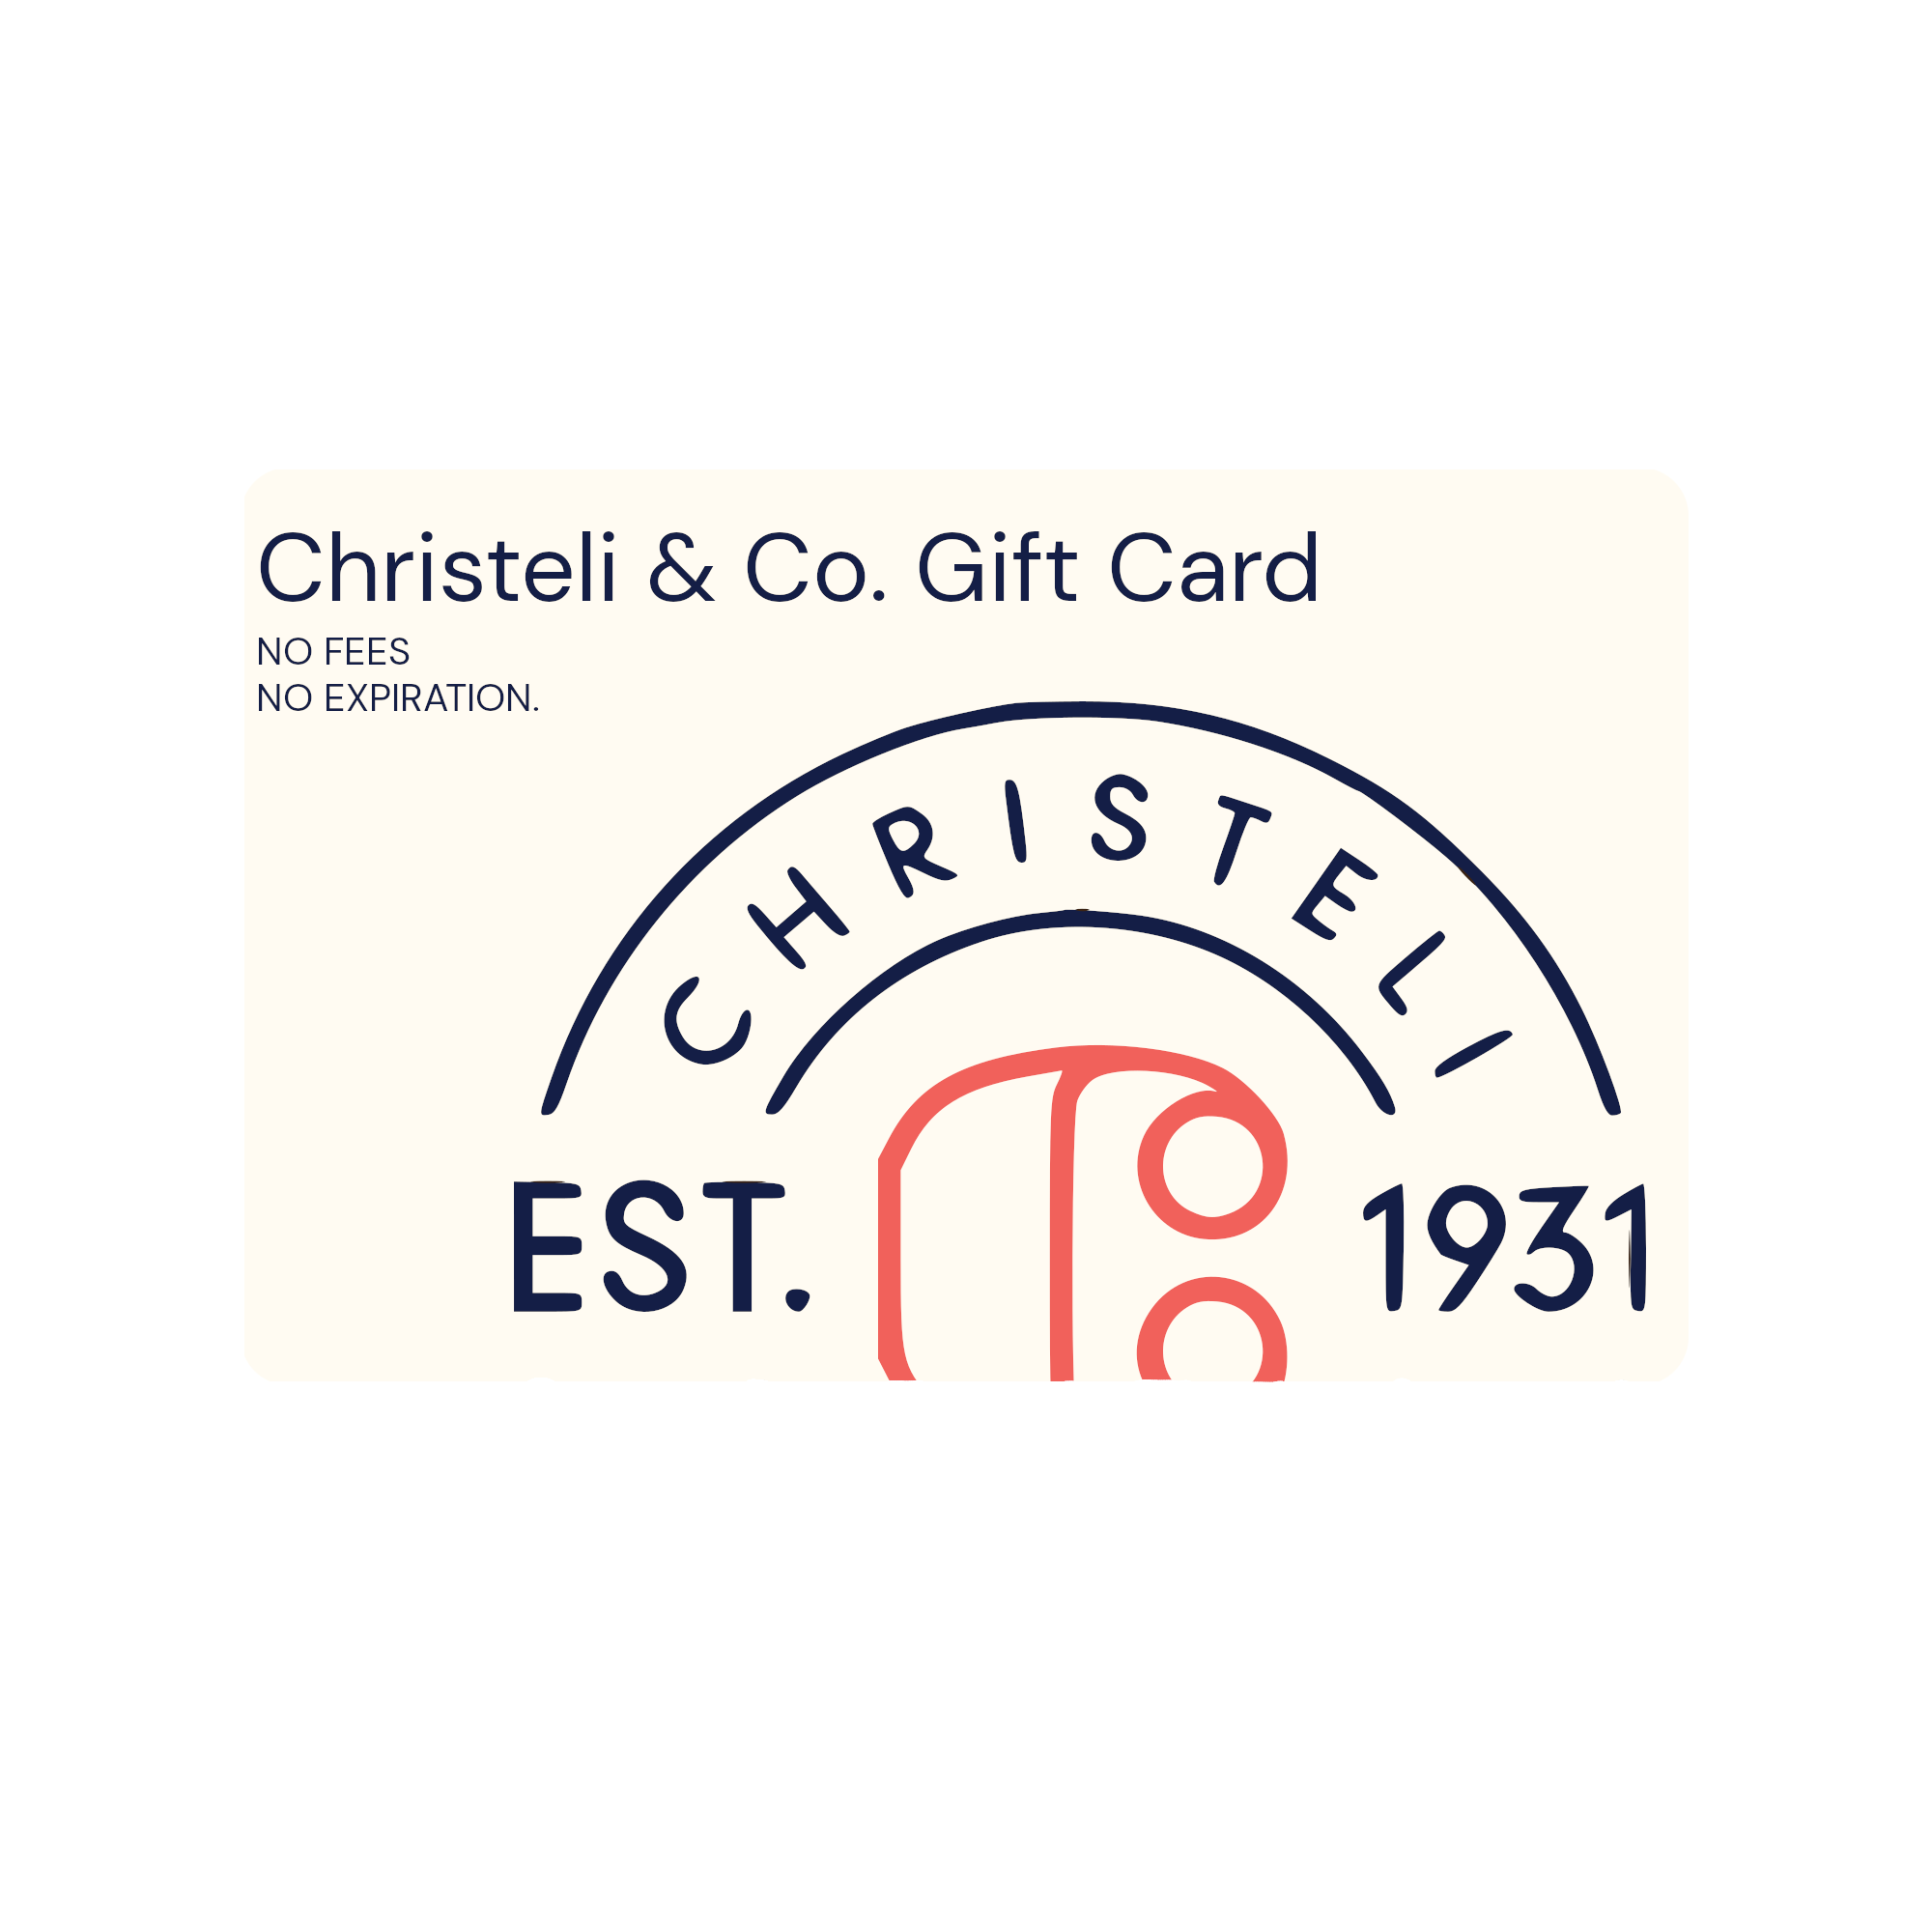 Christeli & Co. Gift Card